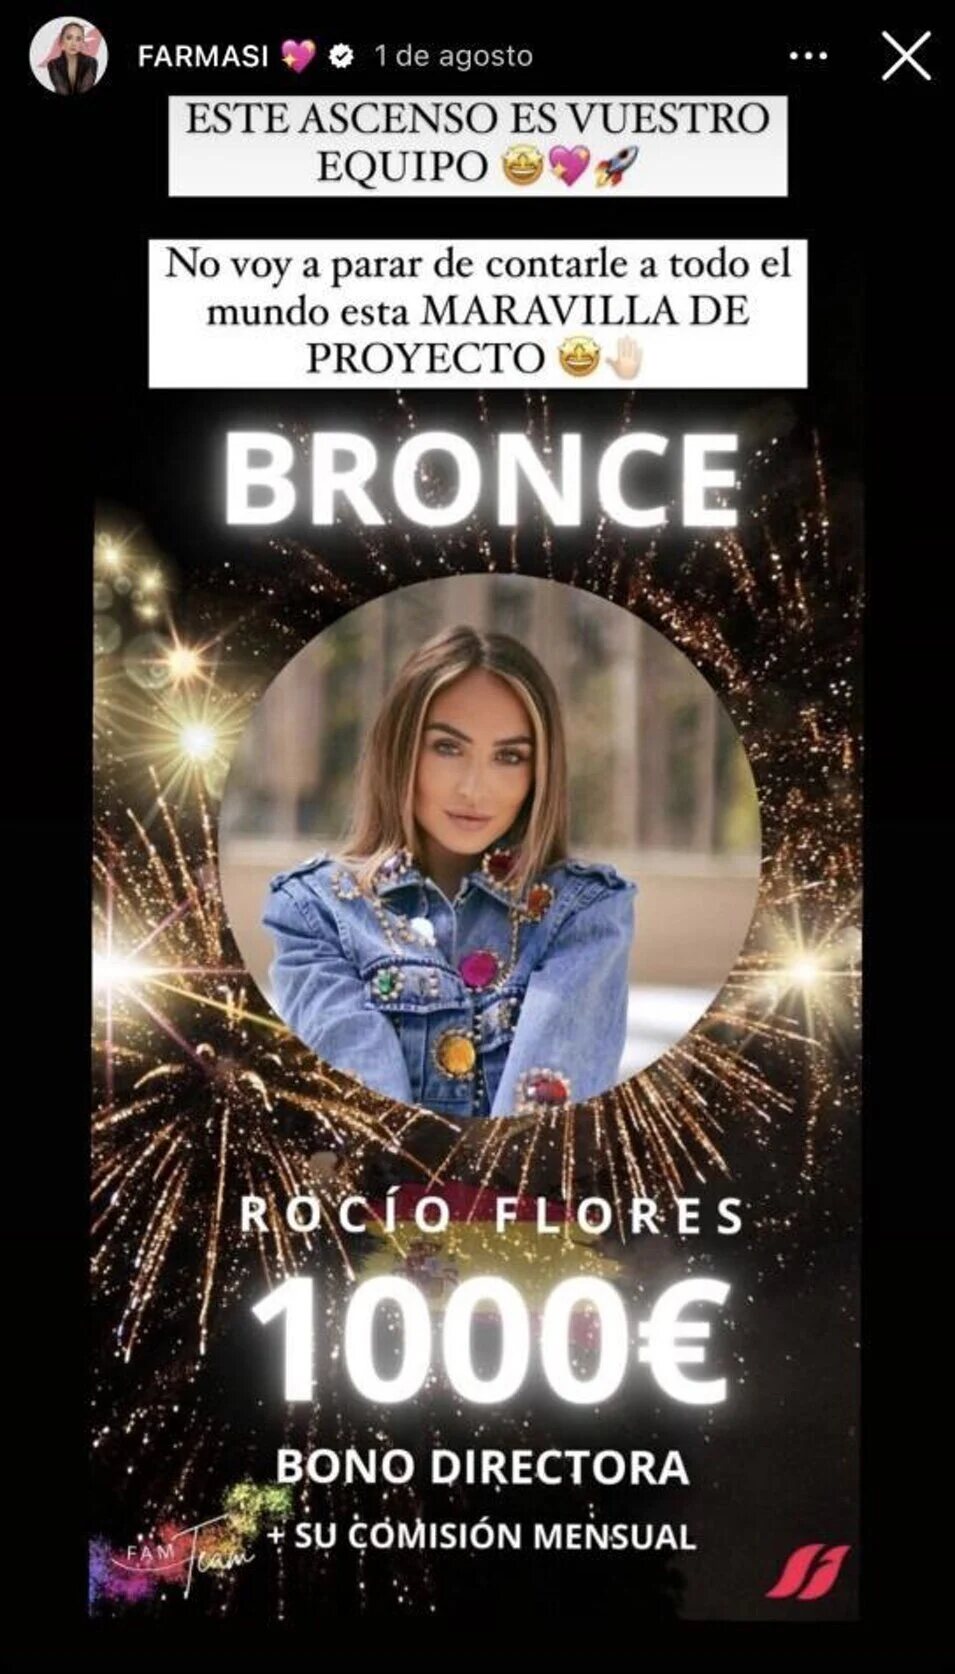 Rocío Flores promocionando Farmasi | Instagram